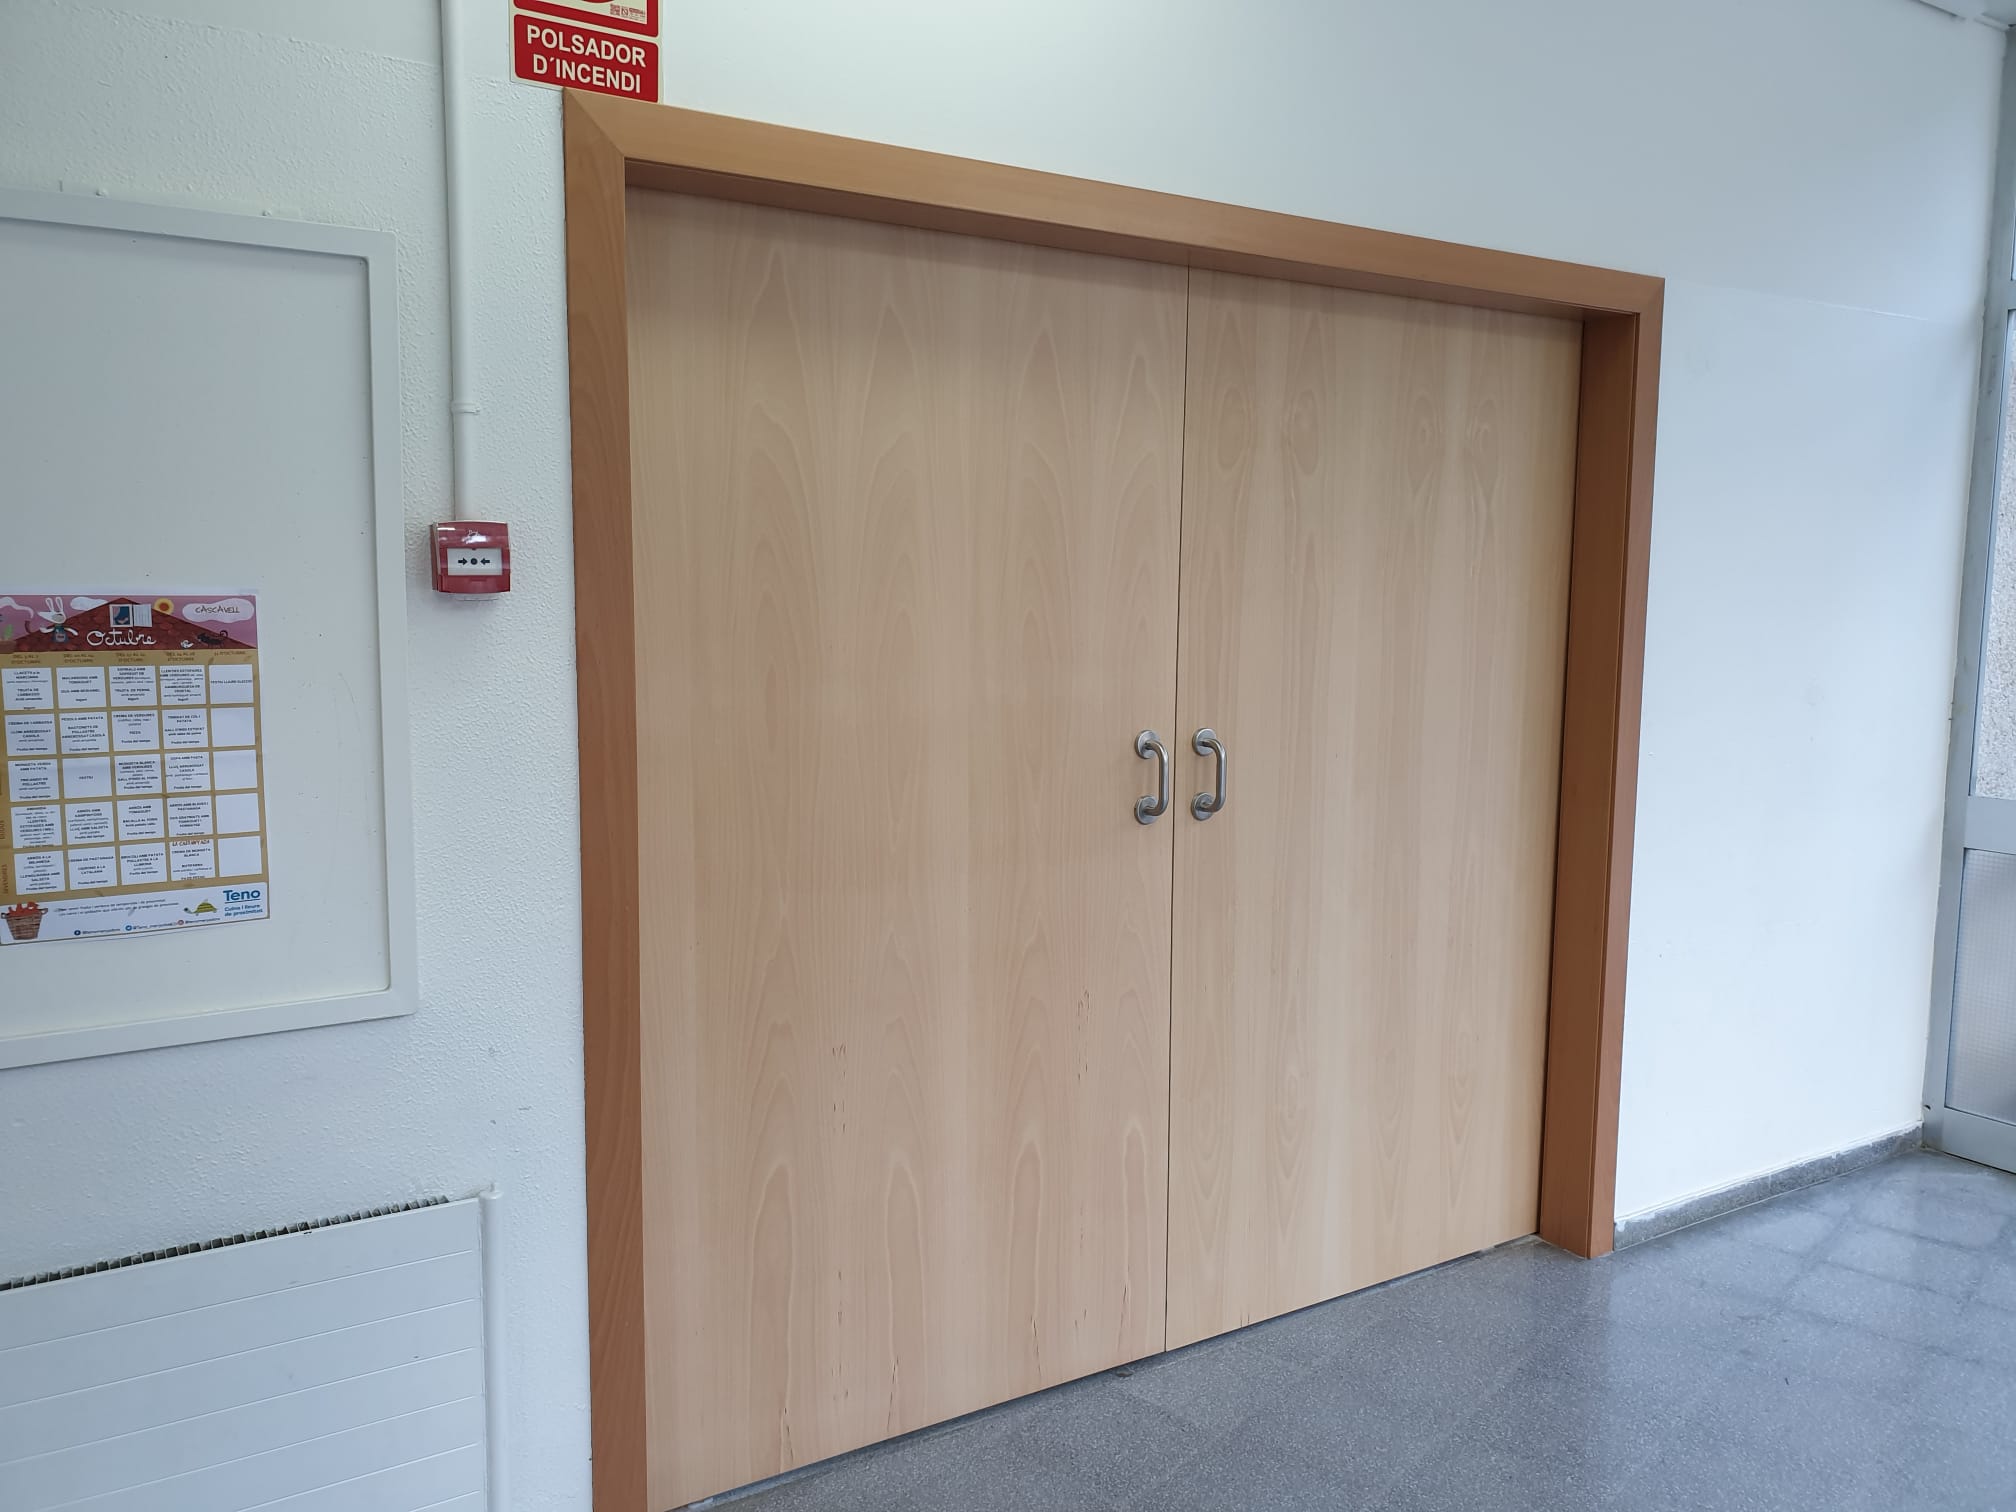 puerta-corredera-madera-Escola-Sant-Adria-Ajuntament-02